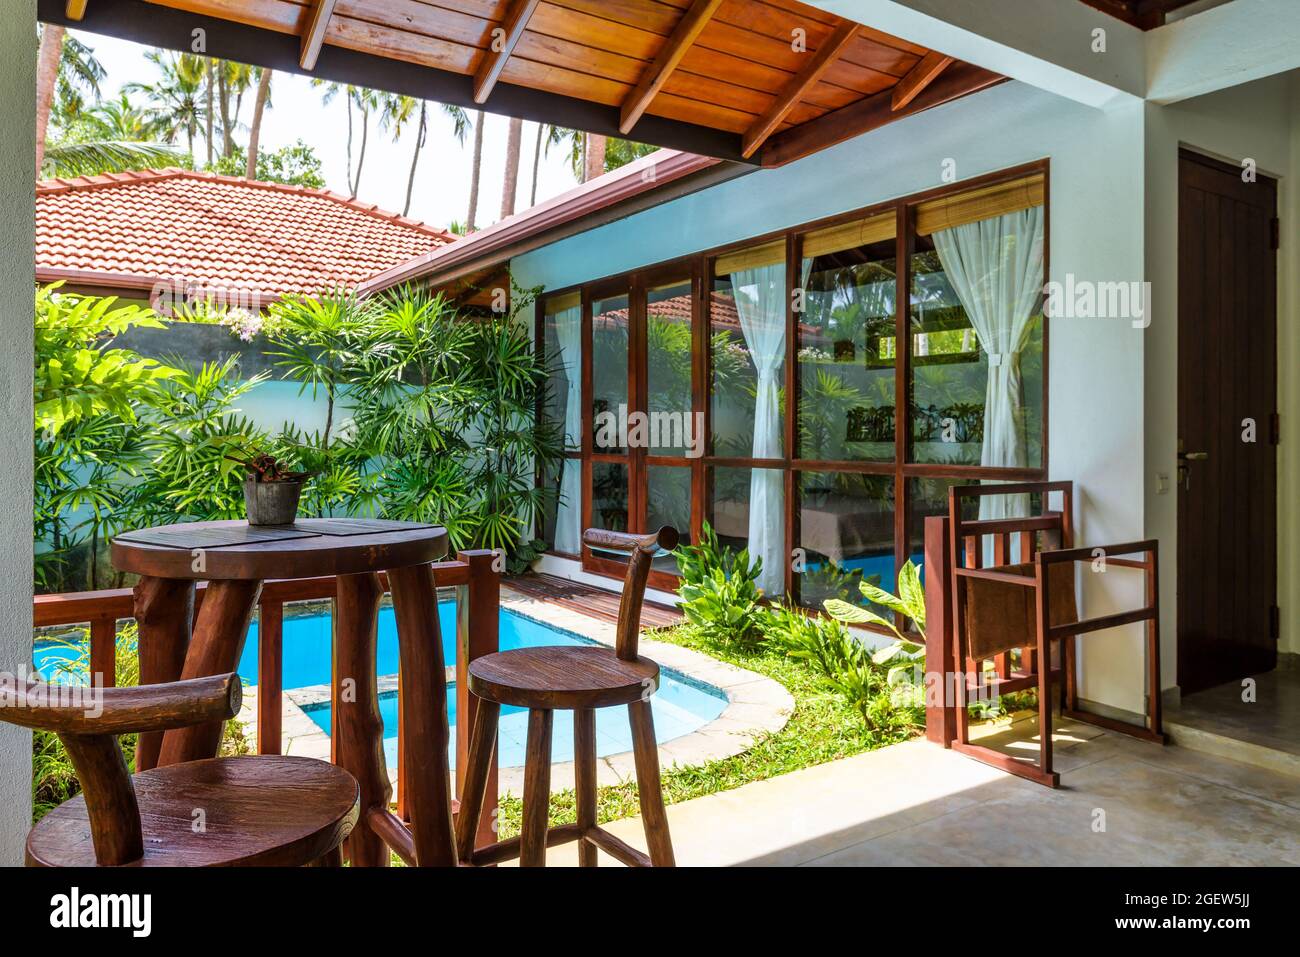 Tangalle, Sri Lanka - Nov 4, 2017: Luxus-Villa unter Palmen, Pool mit tropischem Garten im Resort Hotel. Haus Hof mit Terrasse, id Stockfoto